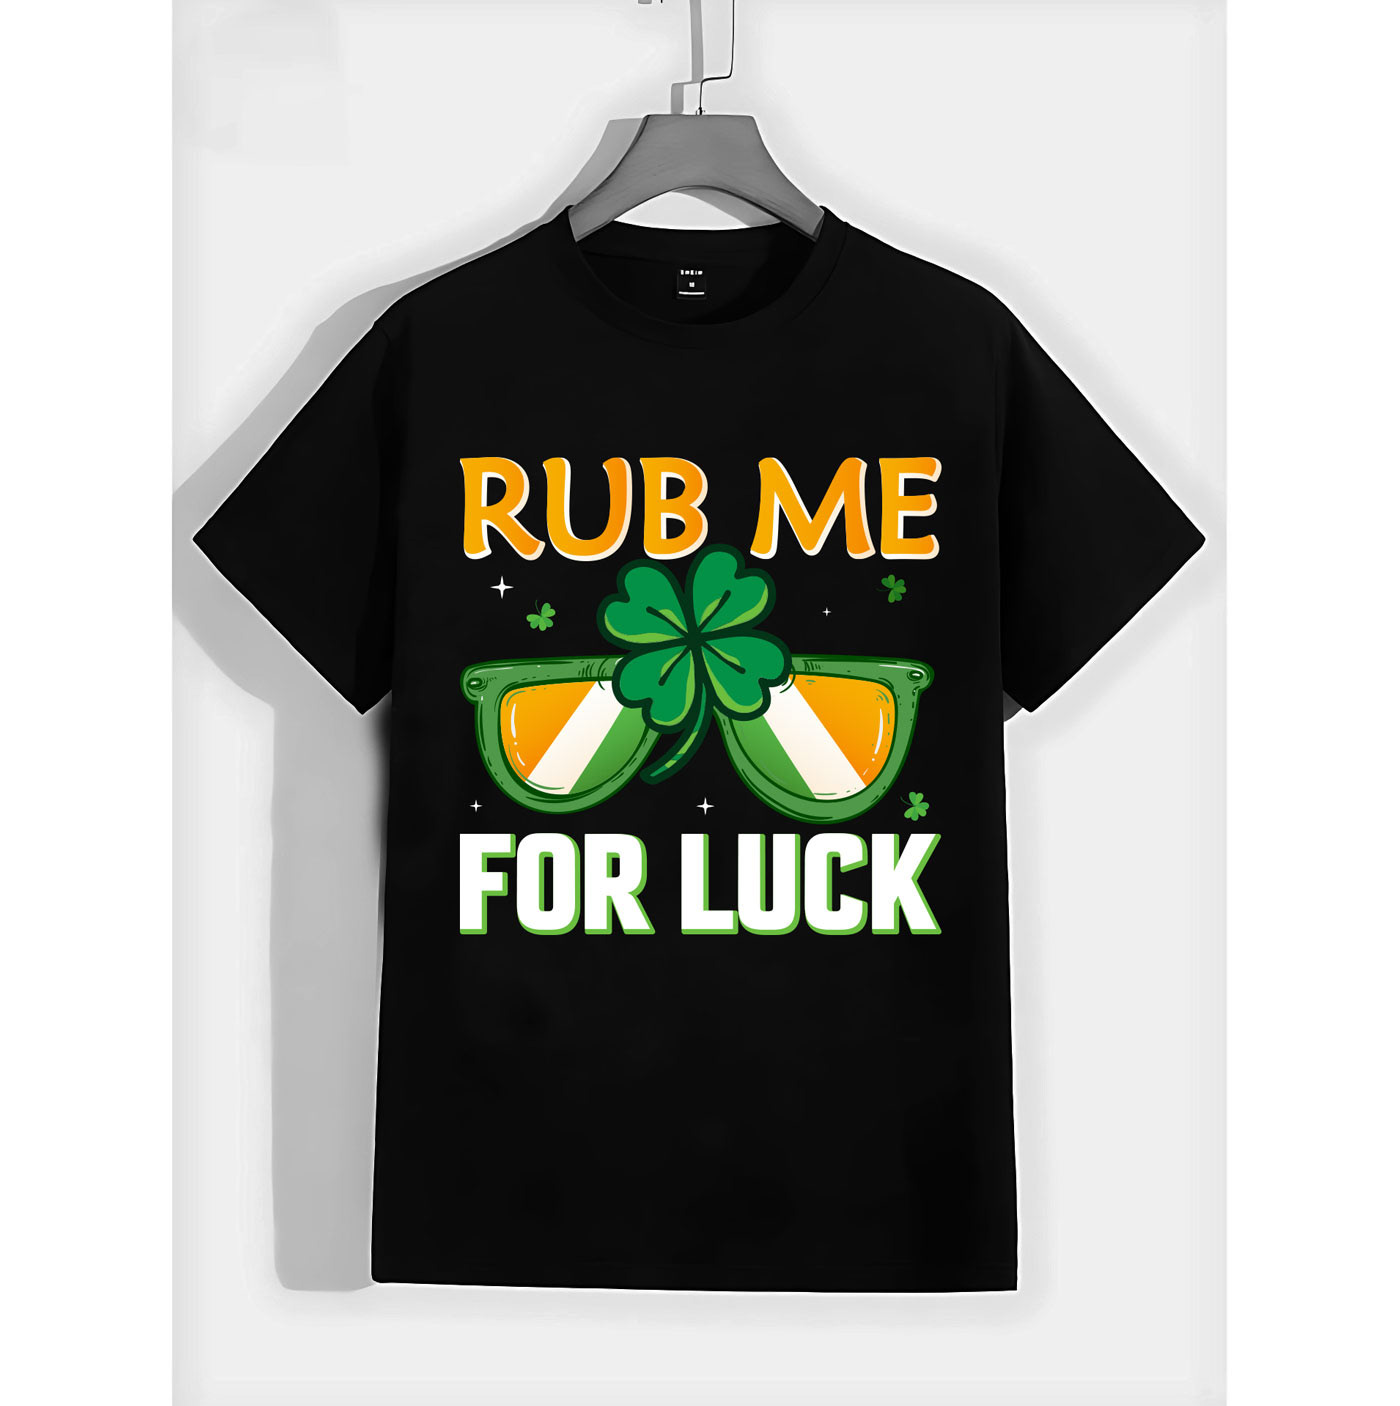 lucky irish green beer lucky brand t-shirts LUCKY T-SHIRT stpatricksday